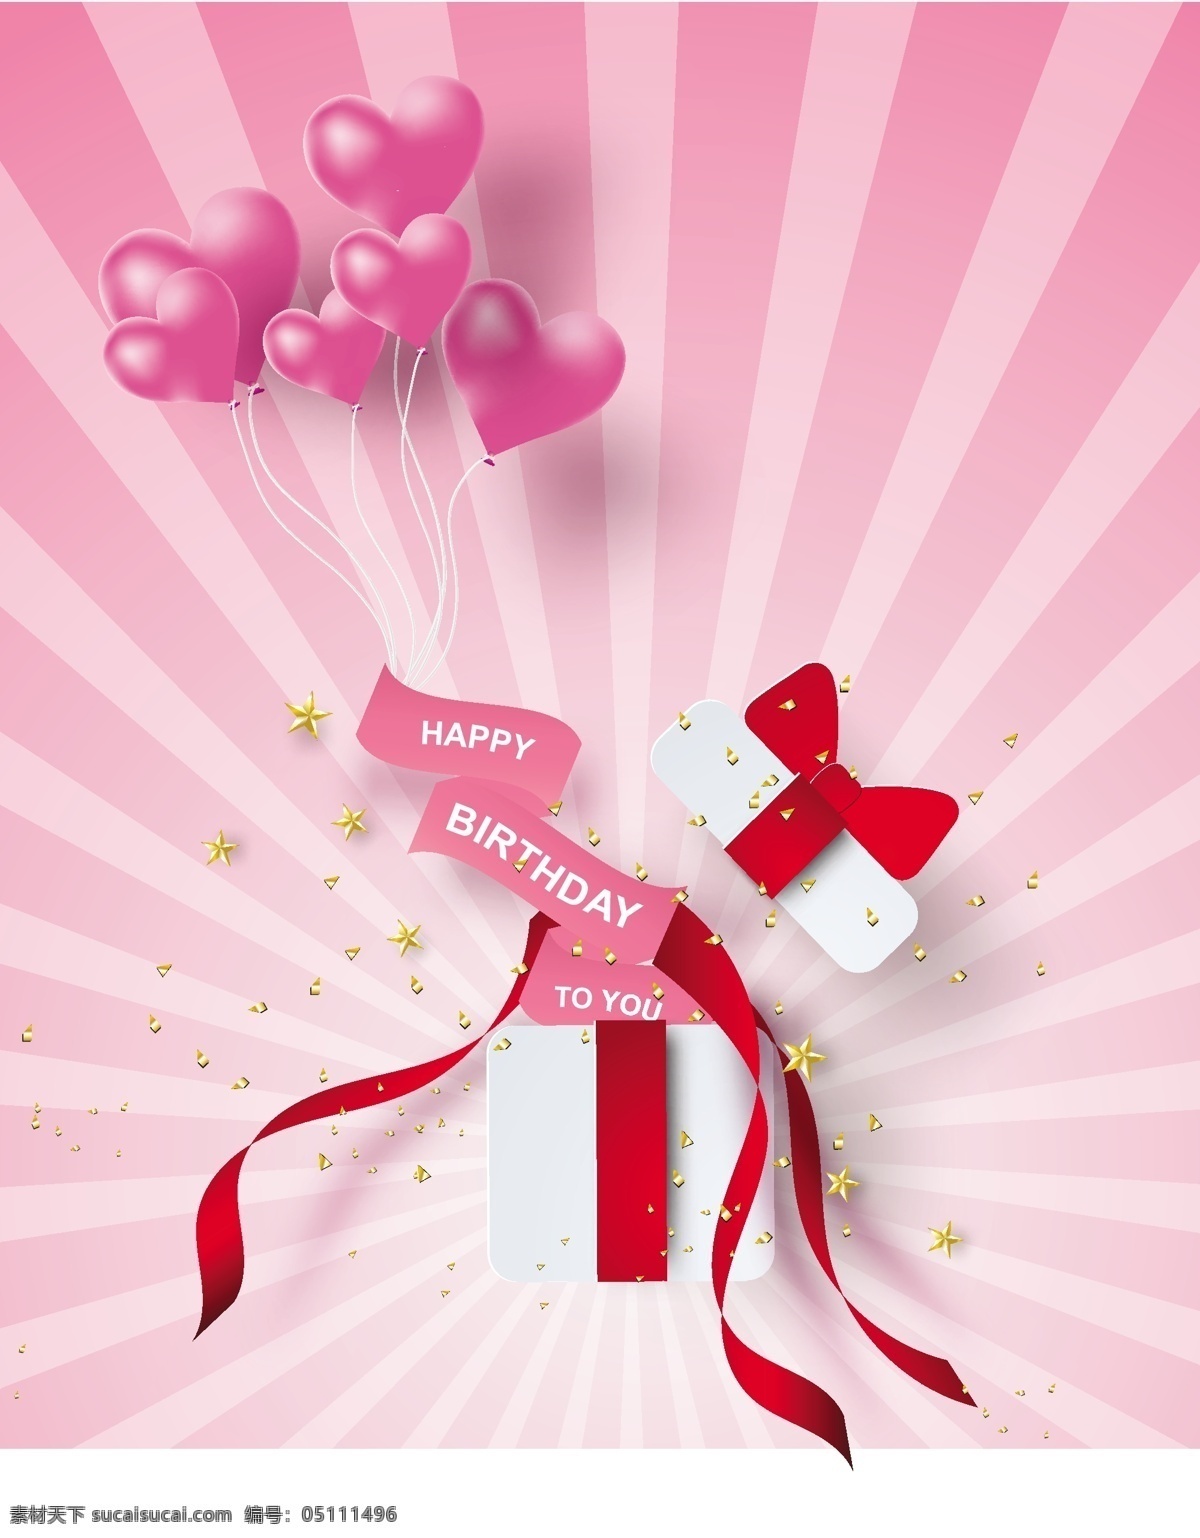 生日背景图片 生日背景 生日气球 节日 气球 生日快乐 生日 礼盒